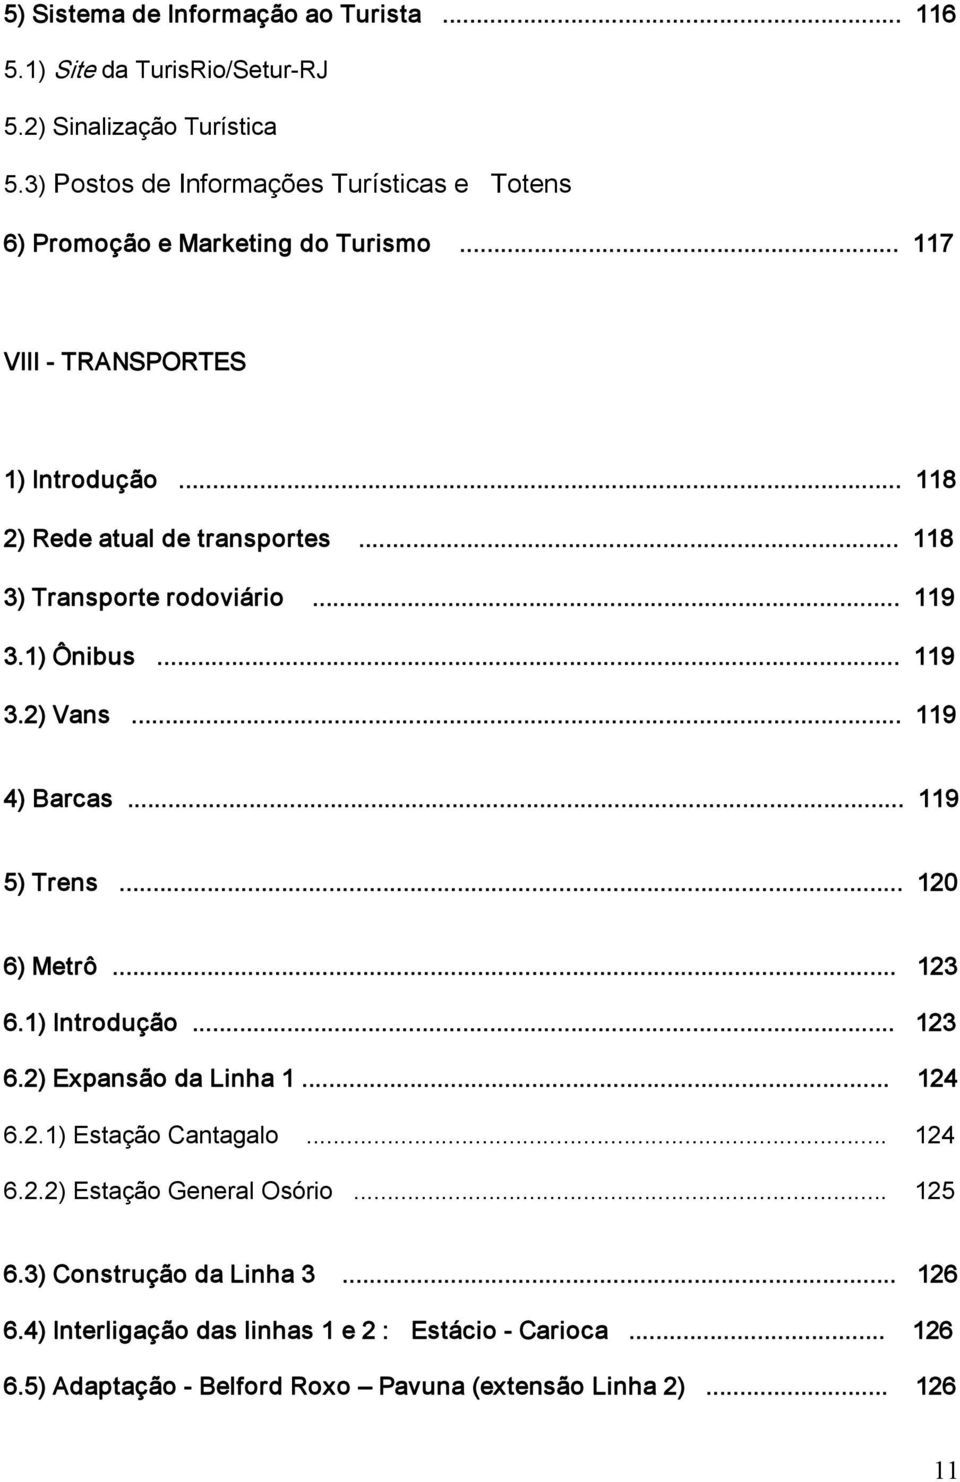 .. 118 3) Transporte rodoviário... 119 3.1) Ônibus... 119 3.2) Vans... 119 4) Barcas... 119 5) Trens... 120 6) Metrô... 123 6.1) Introdução... 123 6.2) Expansão da Linha 1.